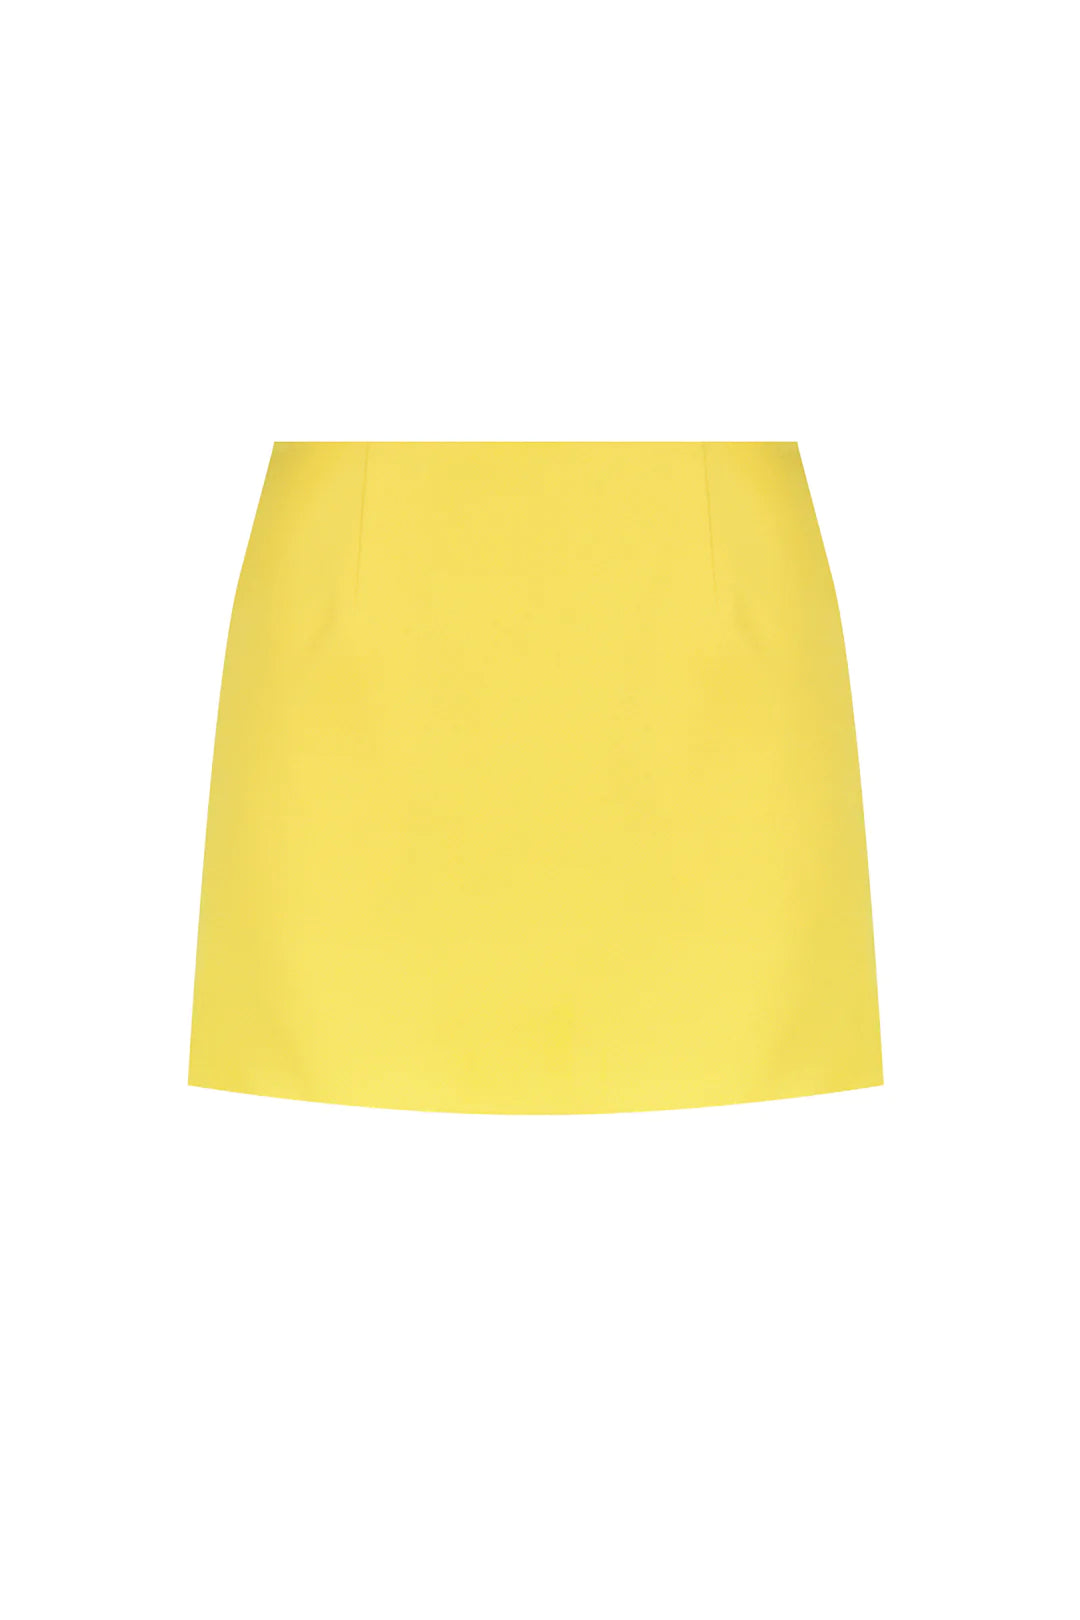 Arava Skirt Sunglower